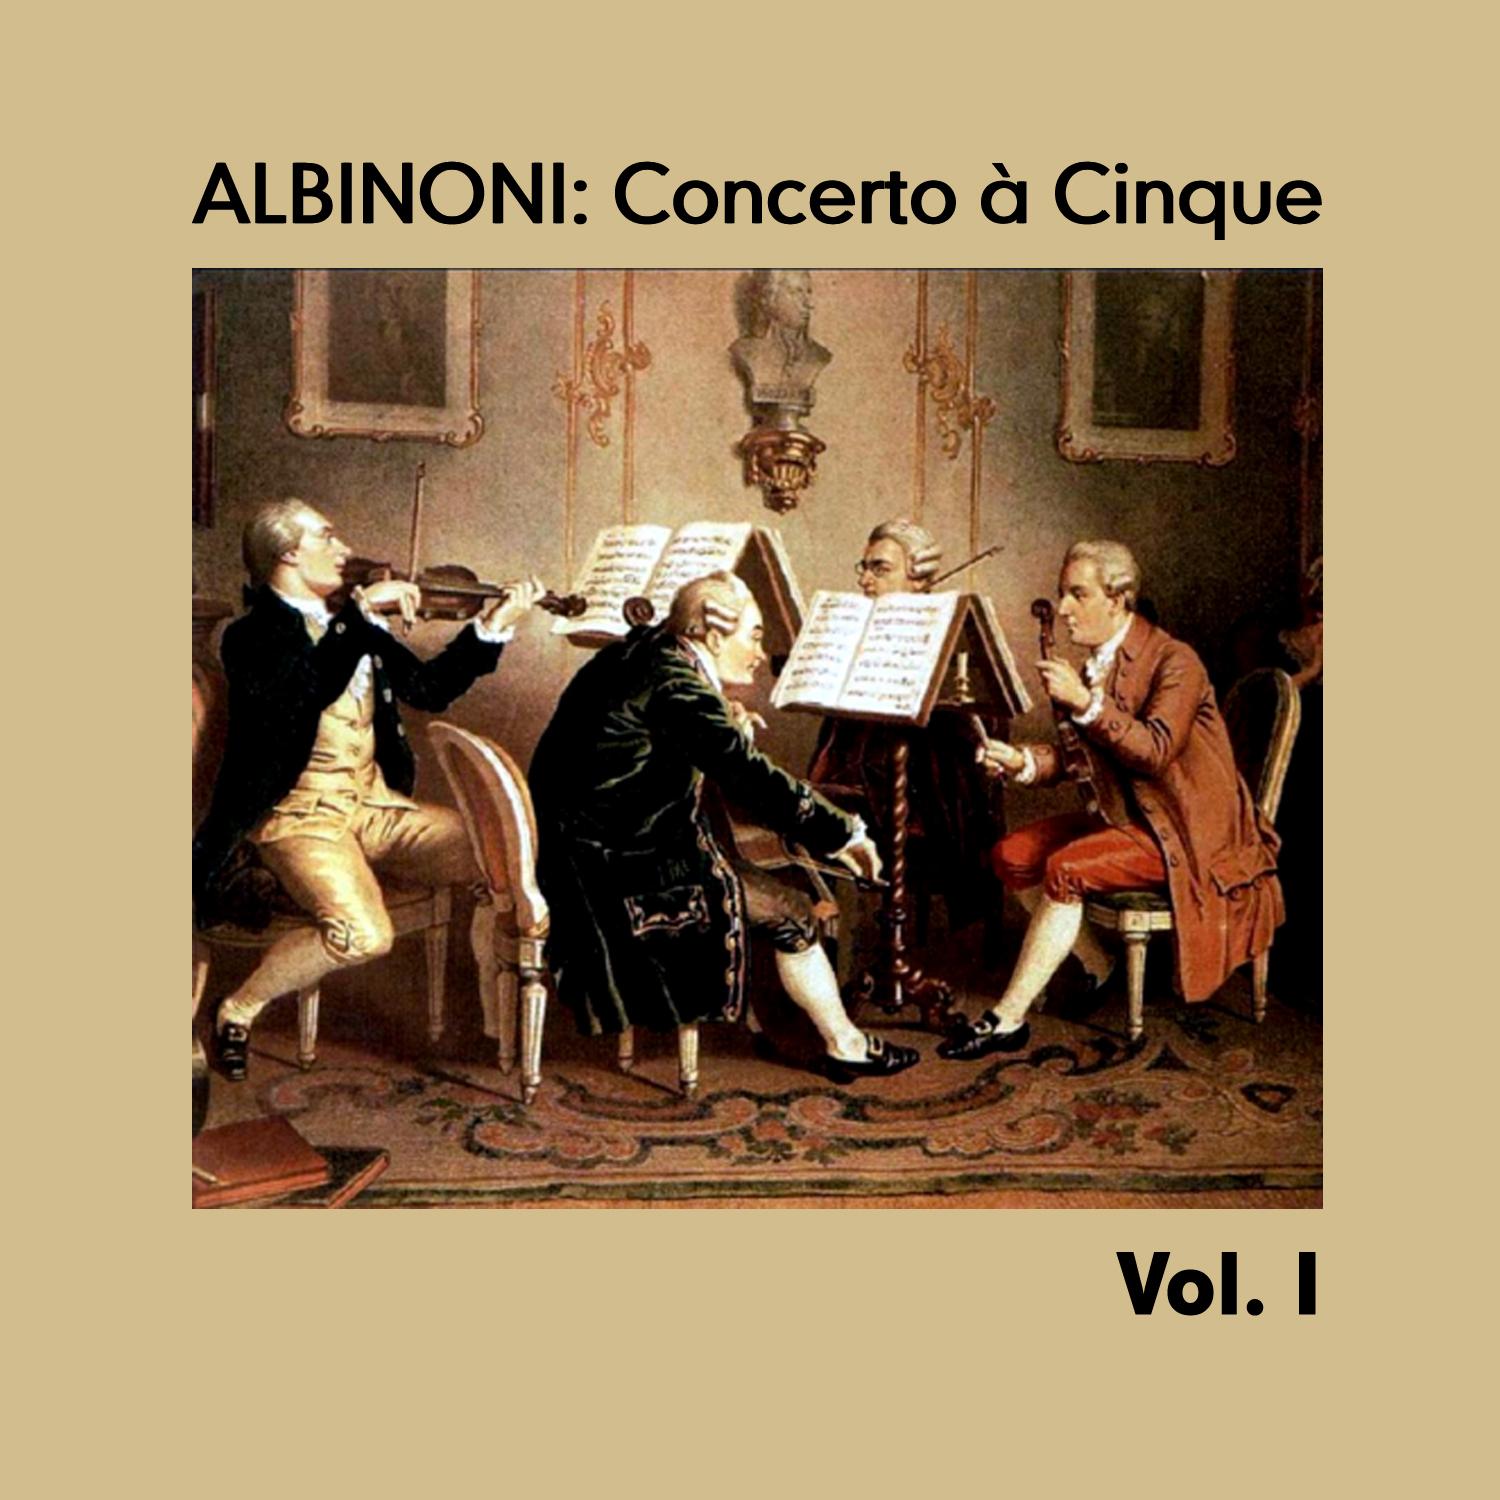 Albinoni: Concerto a Cinque, Vol. I